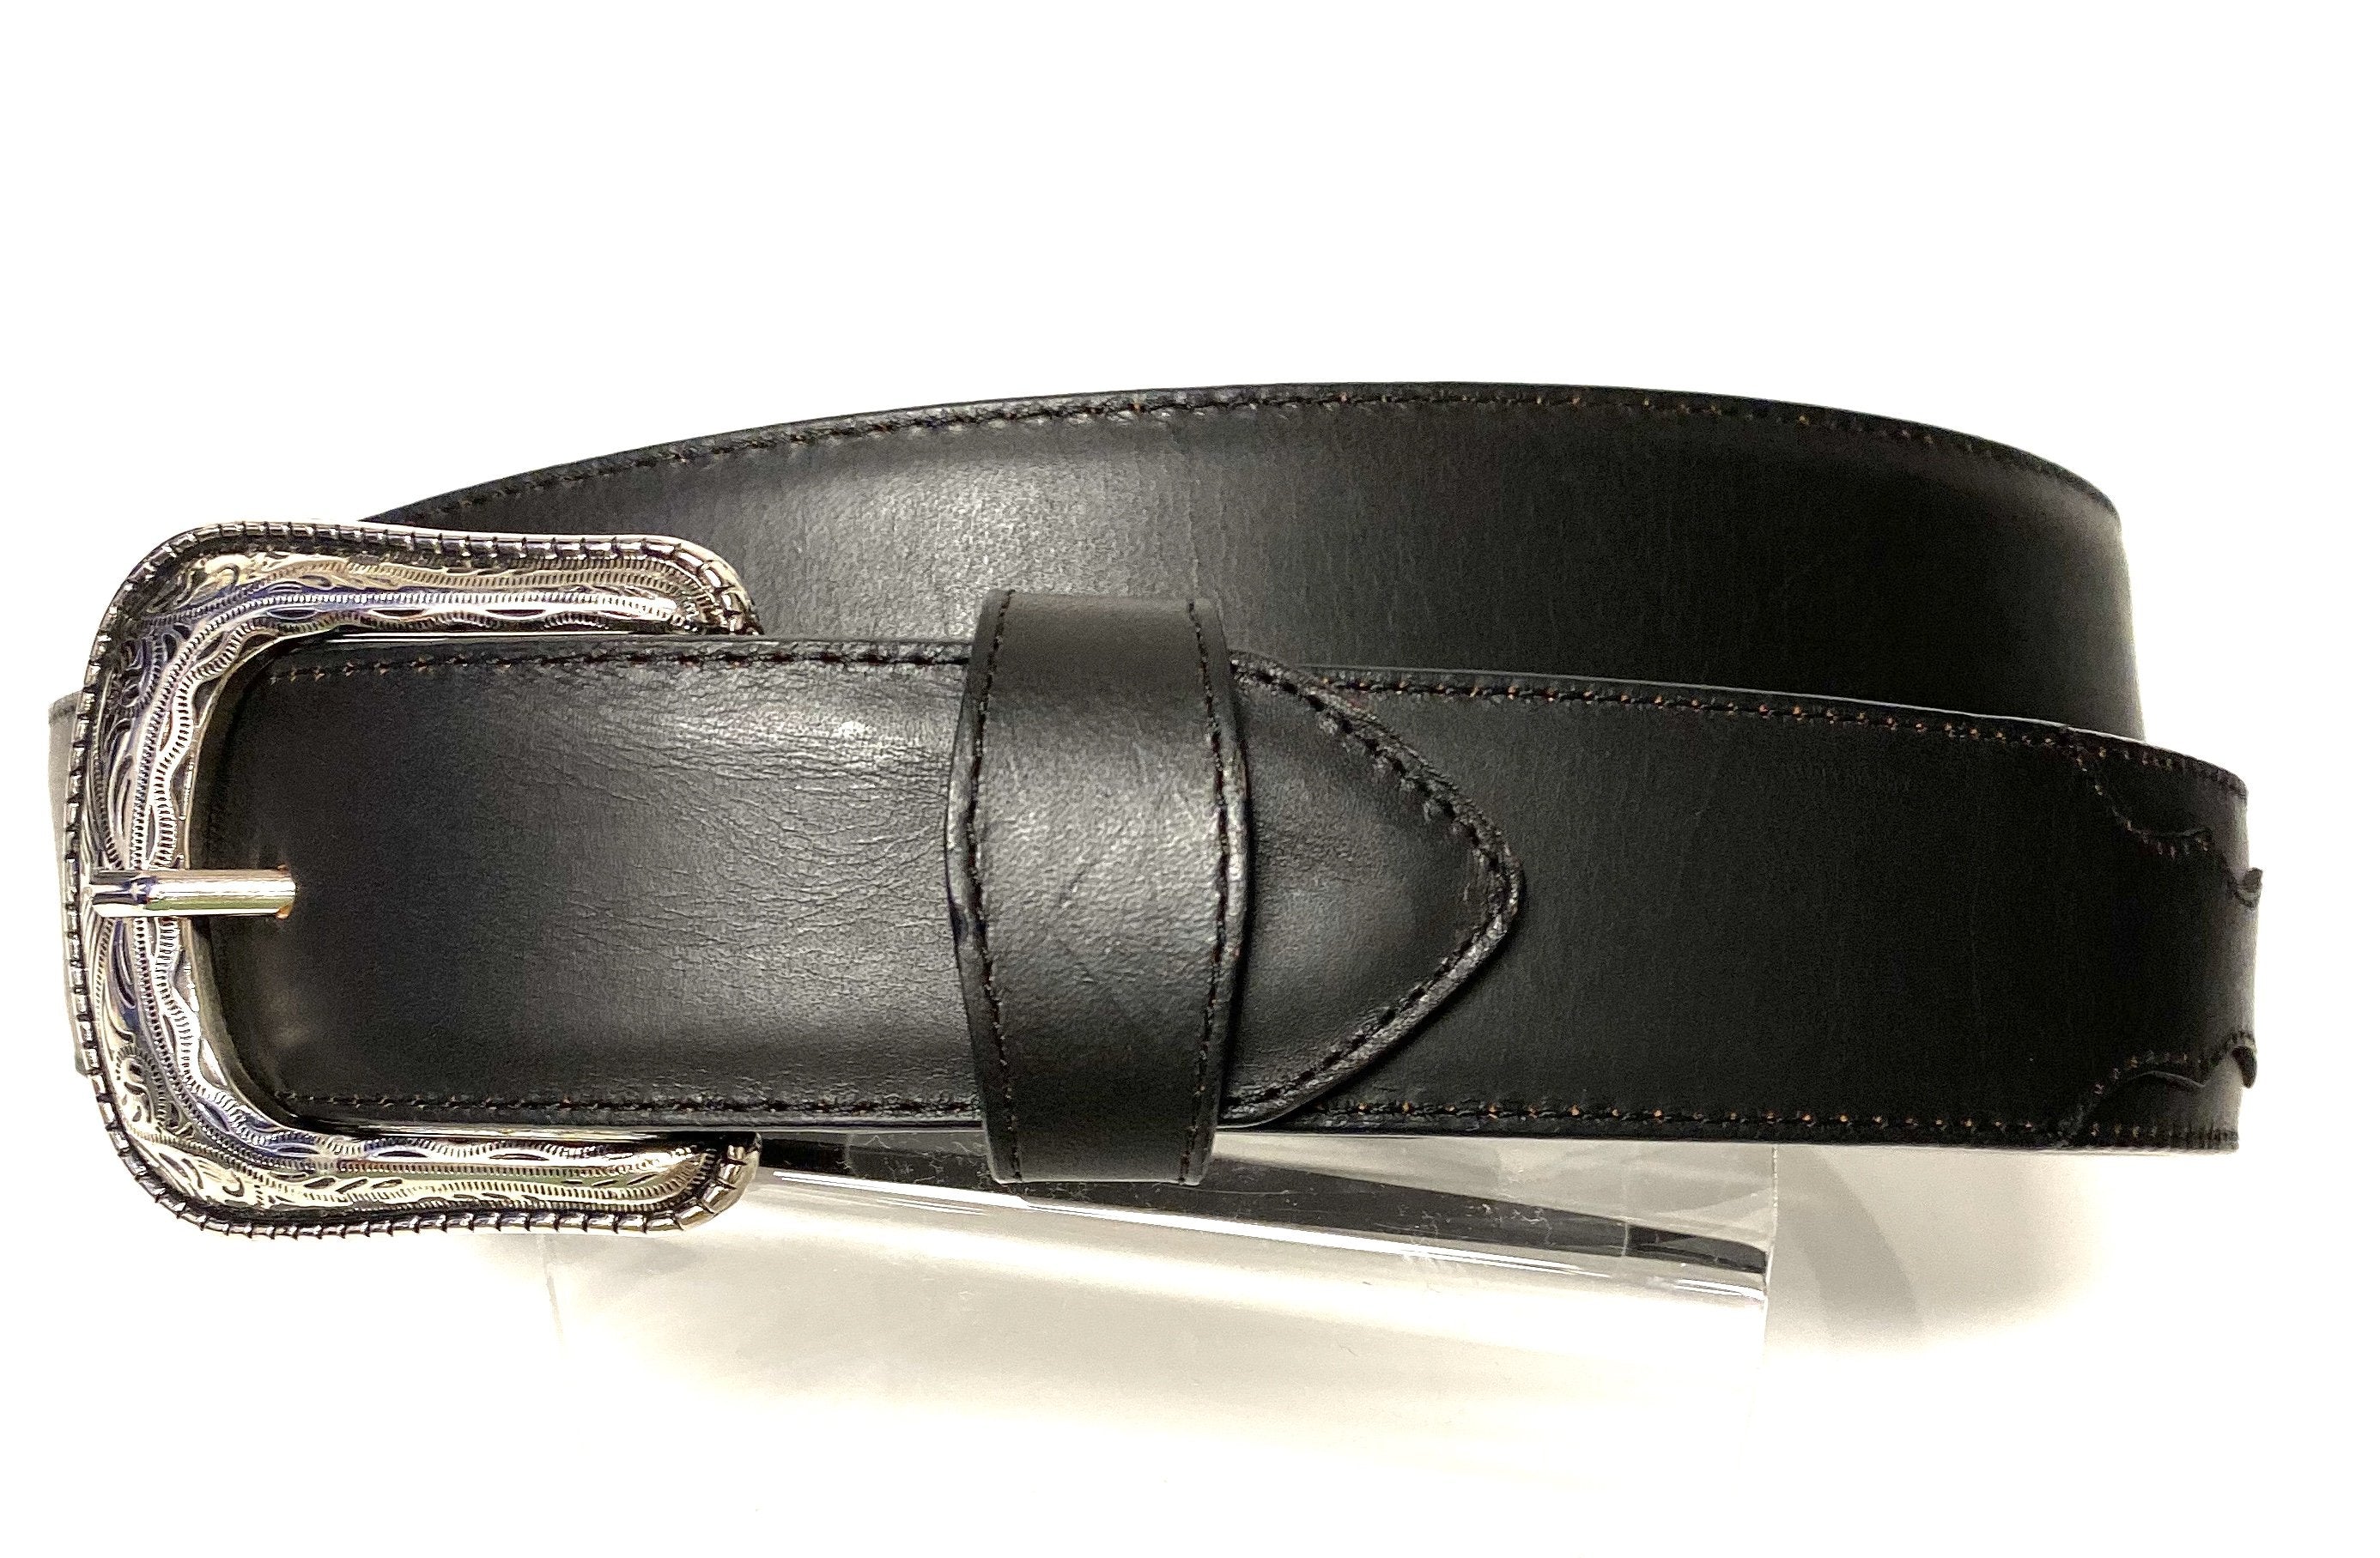 Vintage Leather Belt - Black with Brown Wash 26 US / 36 EU